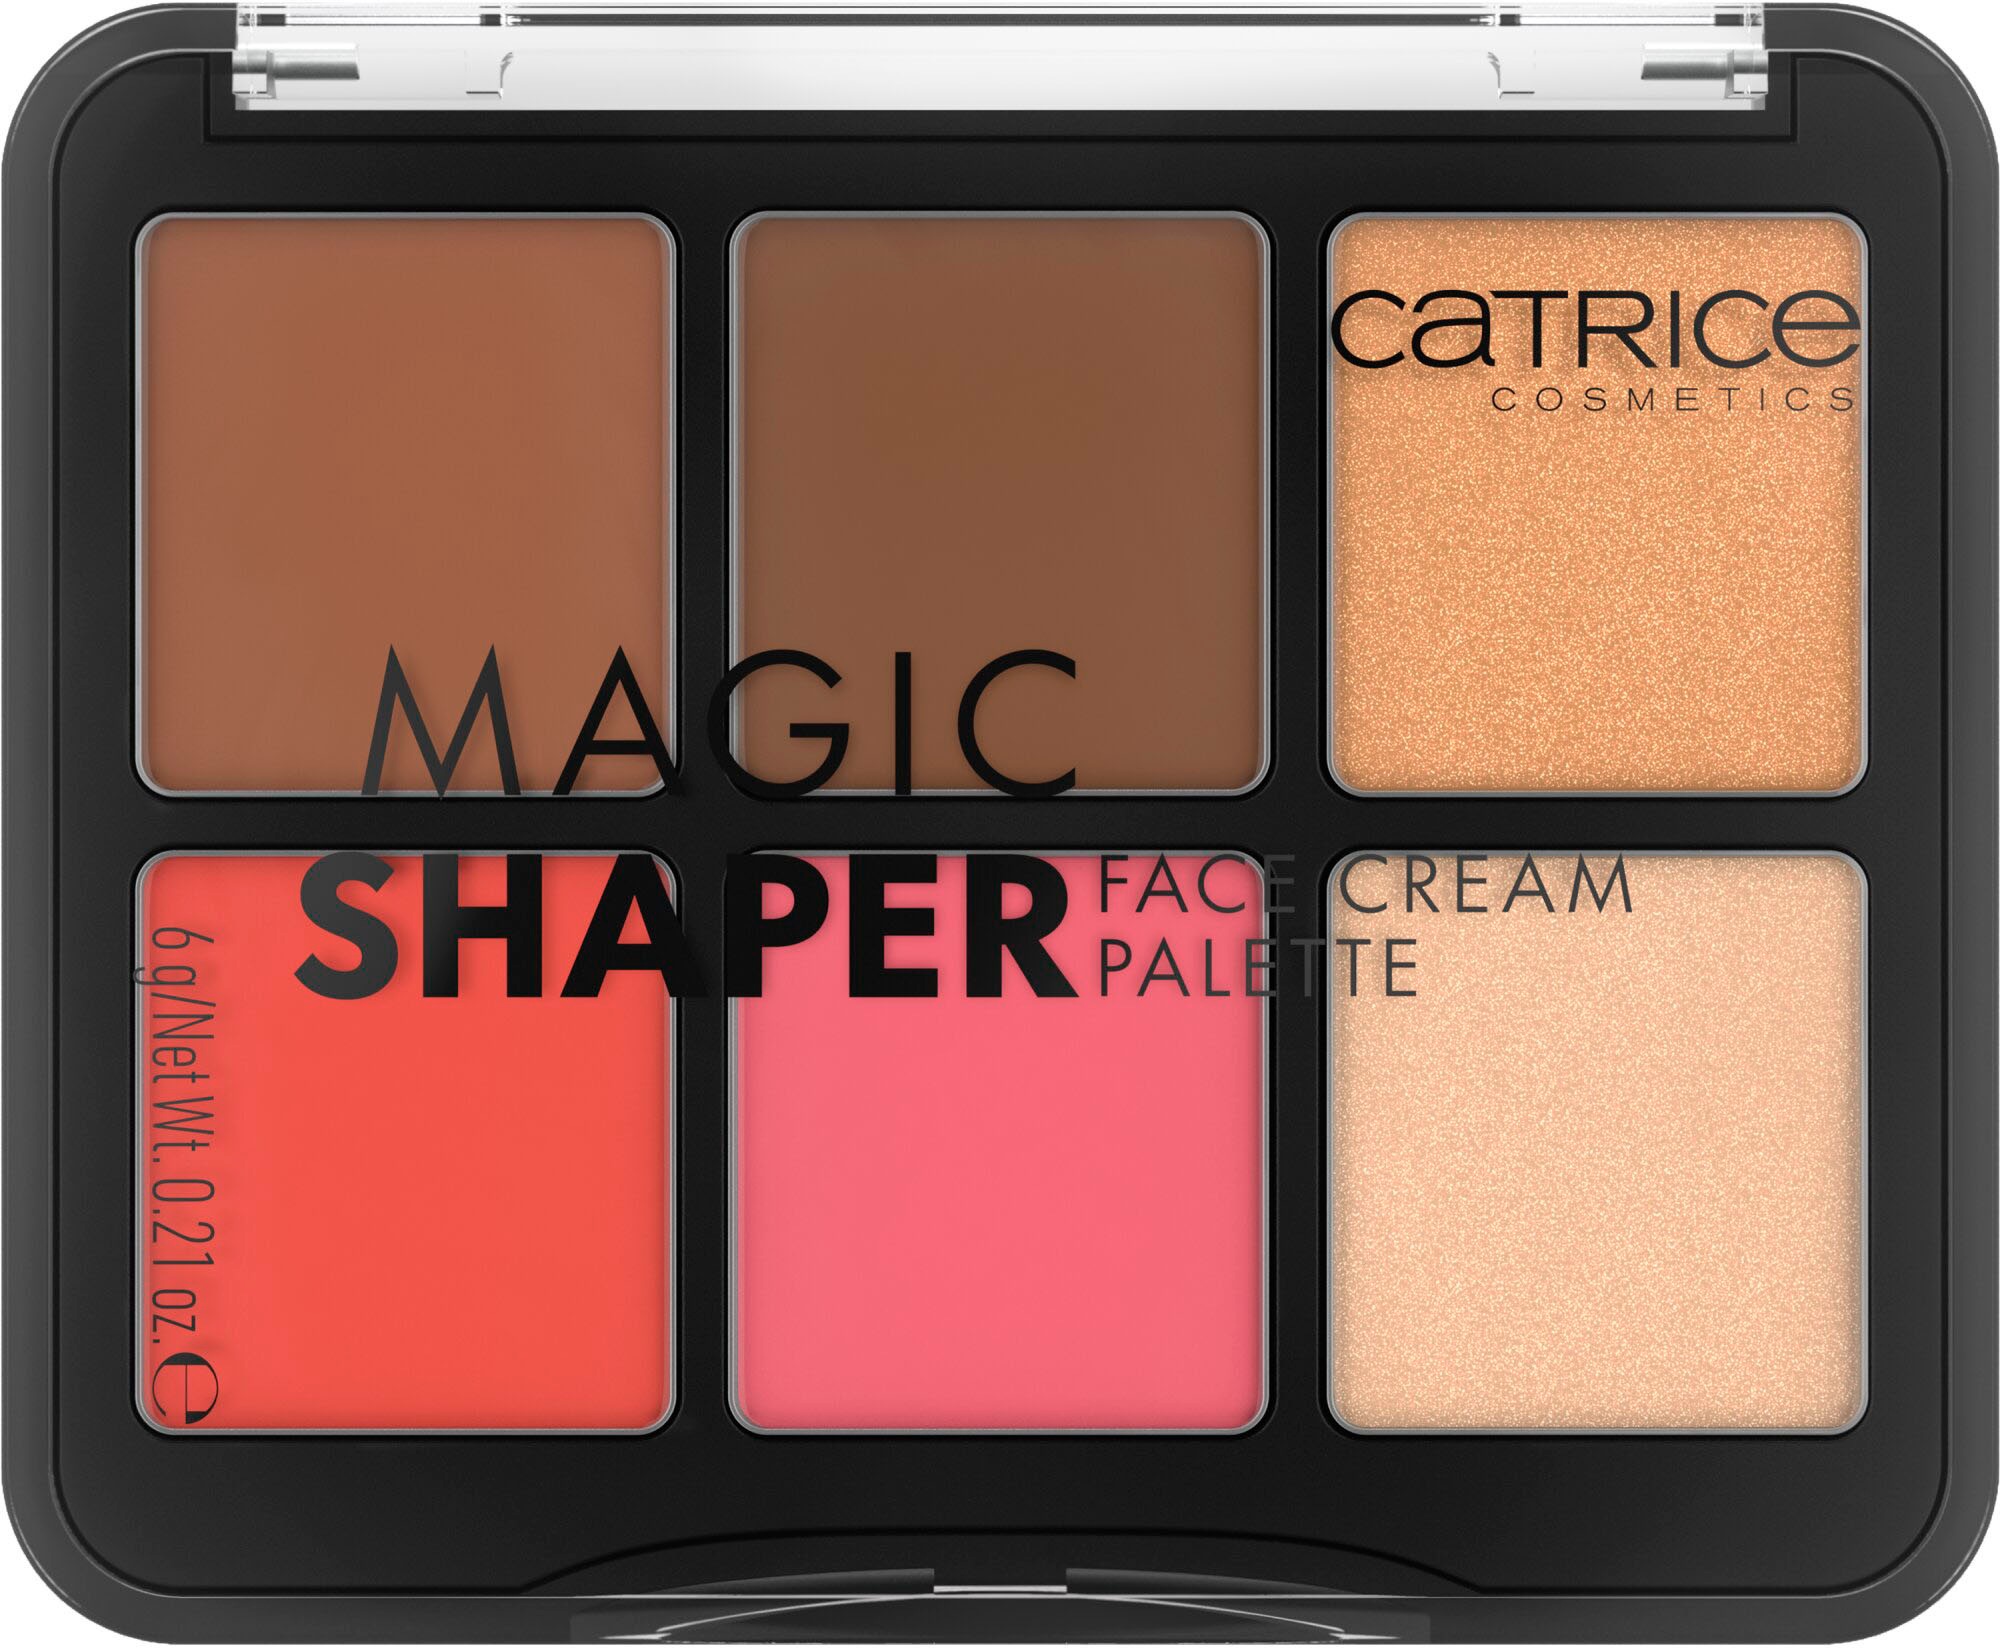 Rouge-Palette »Magic Shaper Face Cream Palette«